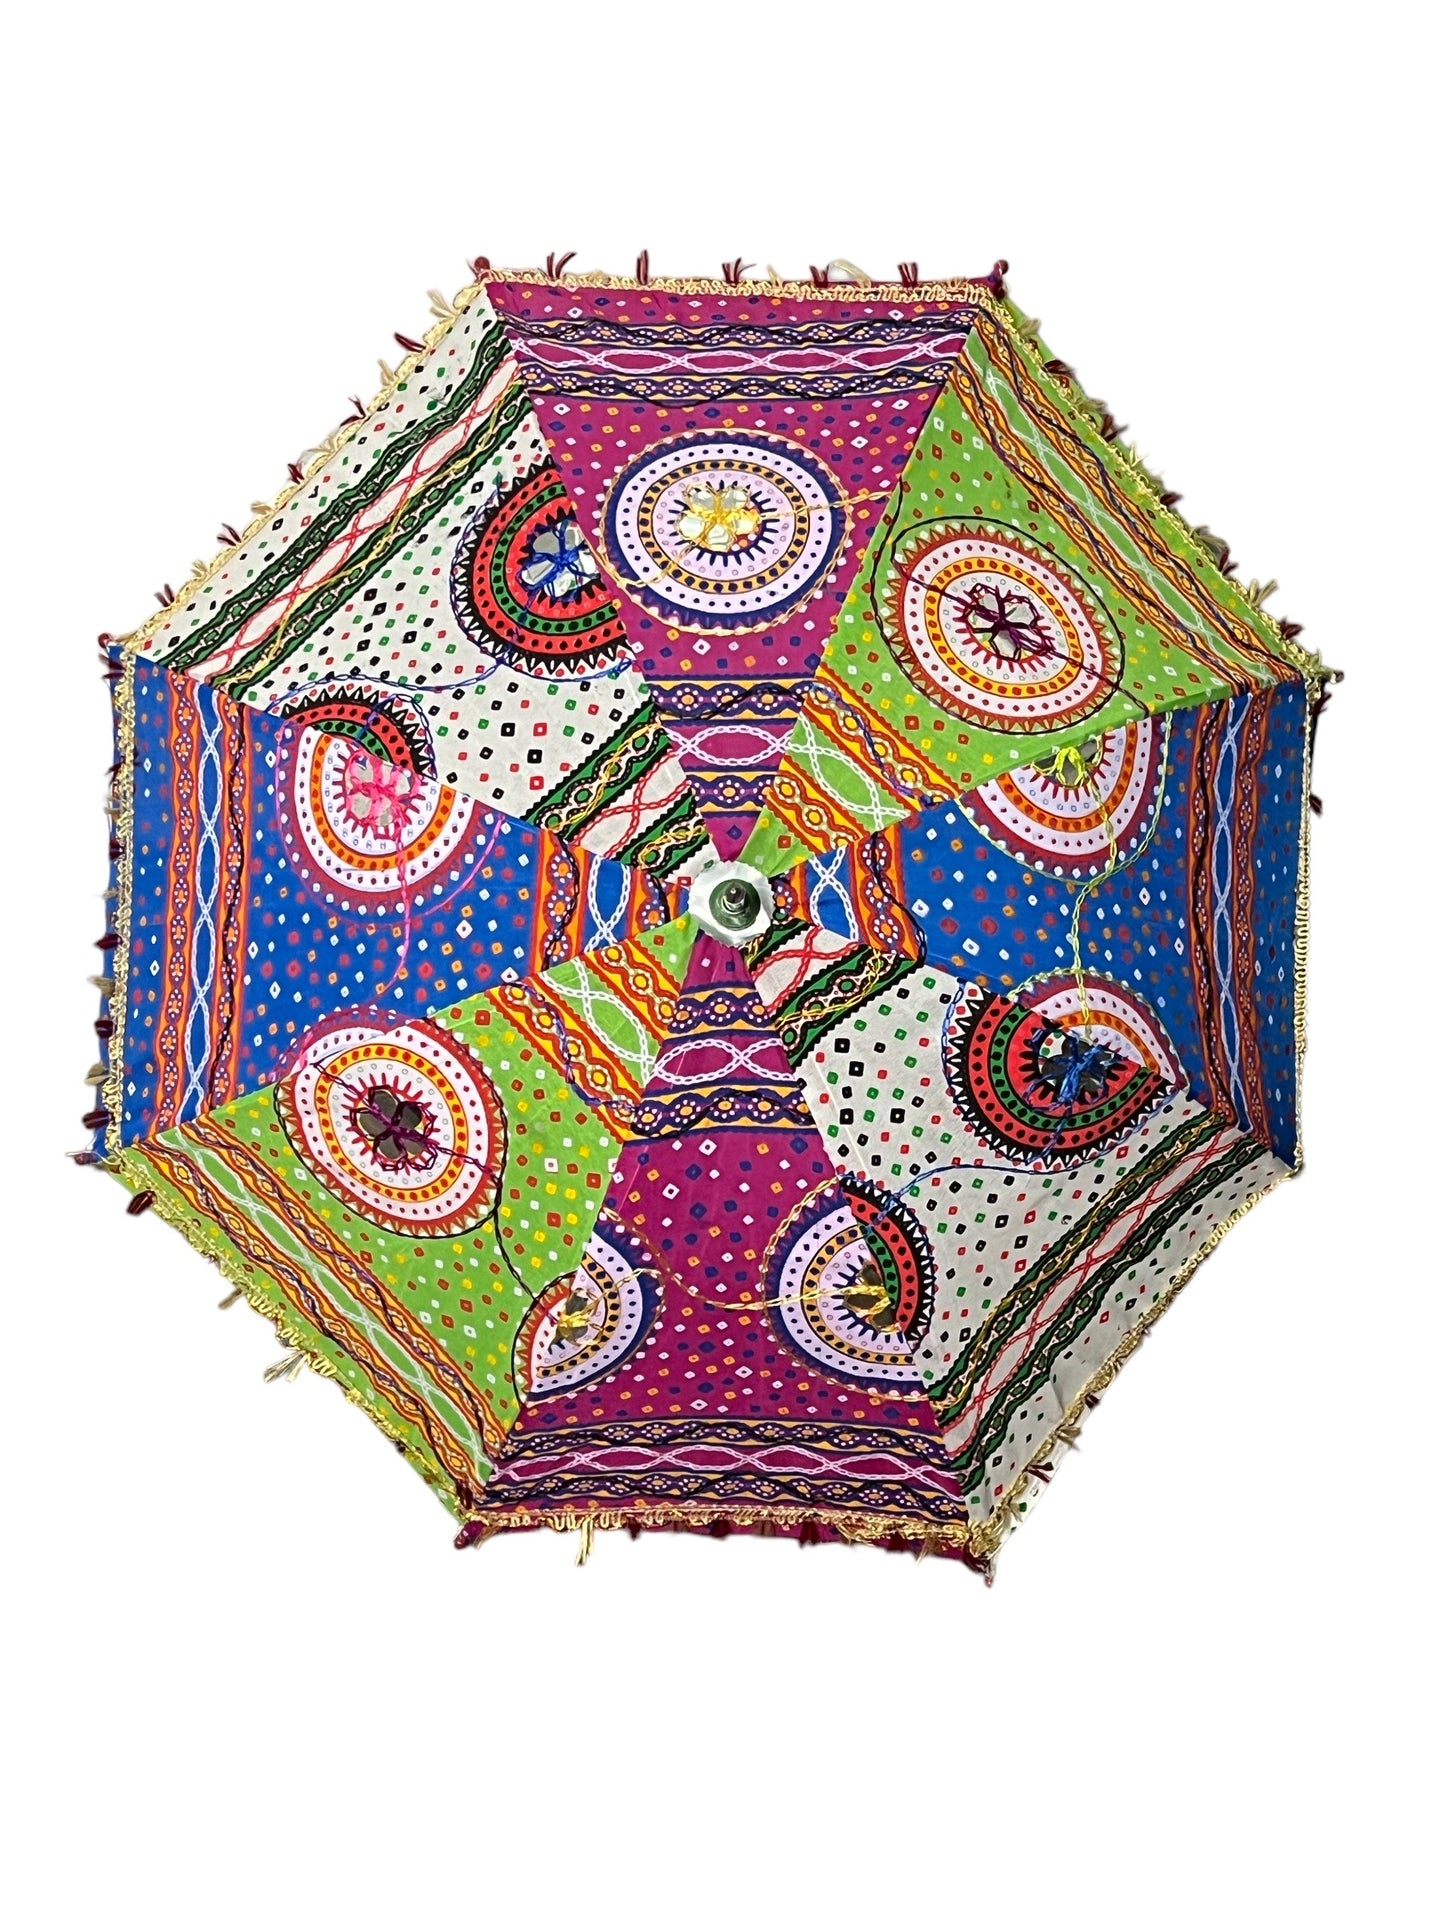 Indian Vintage Handmade Cotton Umbrellas, Indian Wedding Decorative Cotton Umbrellas, Home Decor Sun Shade Umbrellas